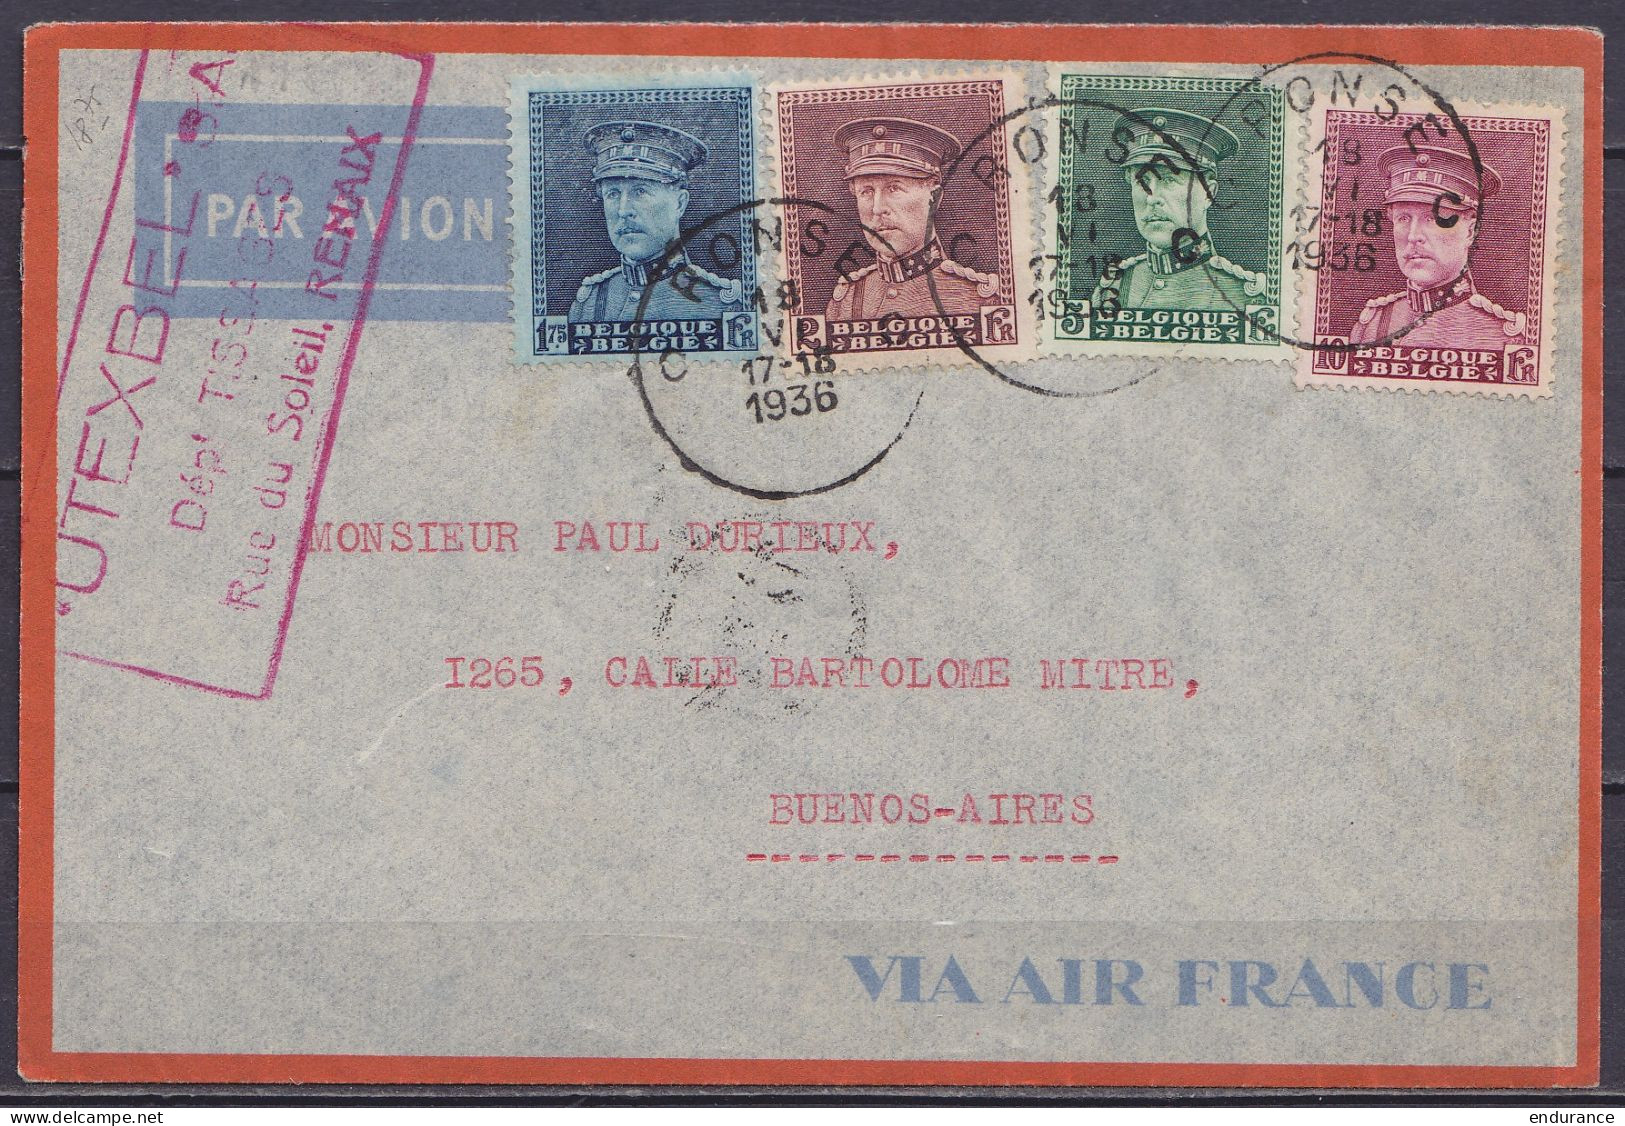 L. Par Avion Affr. N°320+321+323+324 Càd RONSE C /18 VI 1936 Pour BUENOS AIRES Argentine / Enveloppe "VIA AIR France" (a - 1931-1934 Képi